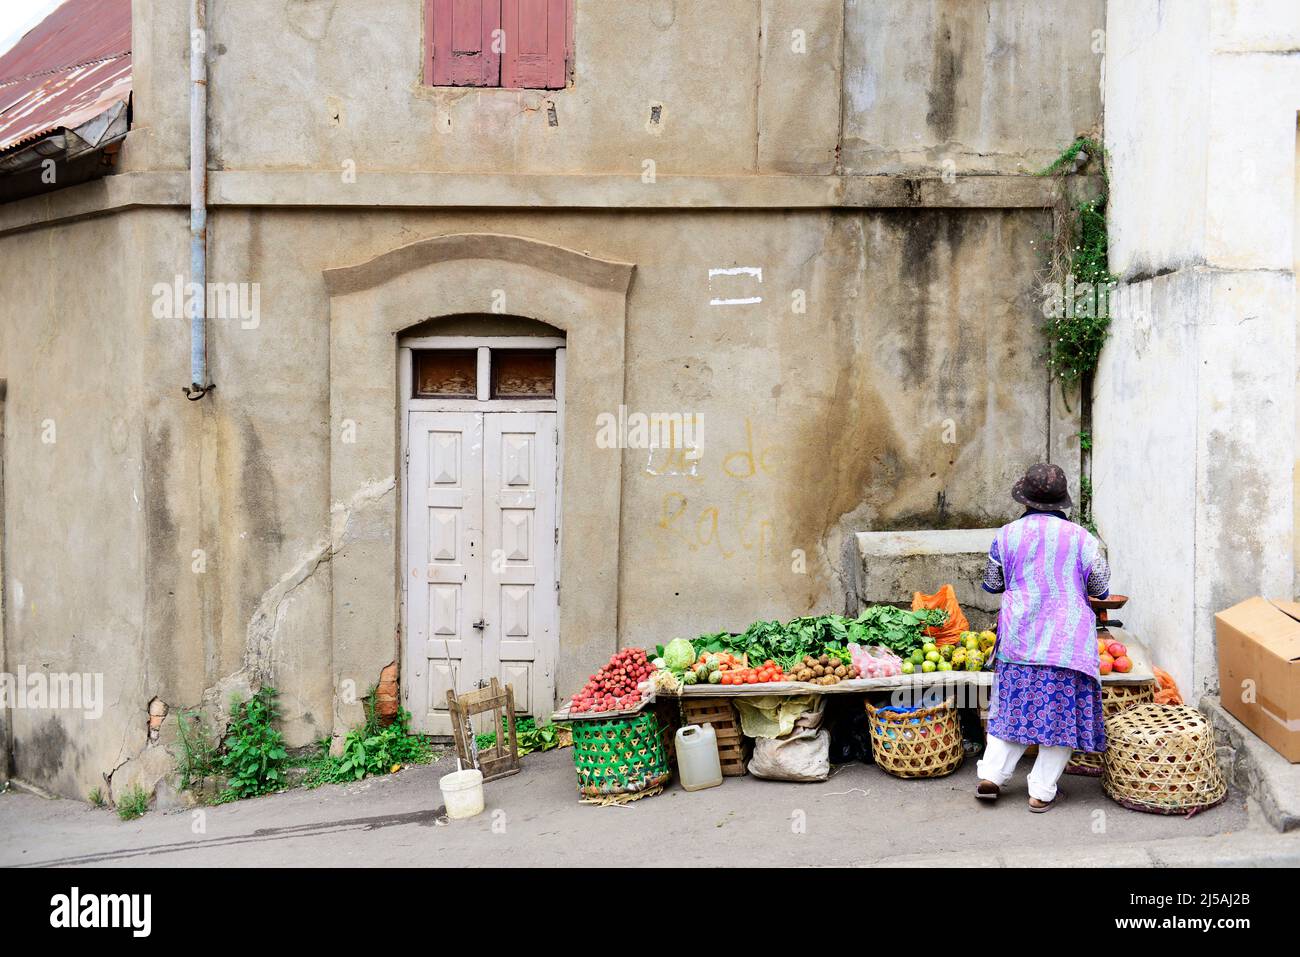 A vegetable vendor in Antananarivo, Madagascar. Stock Photo